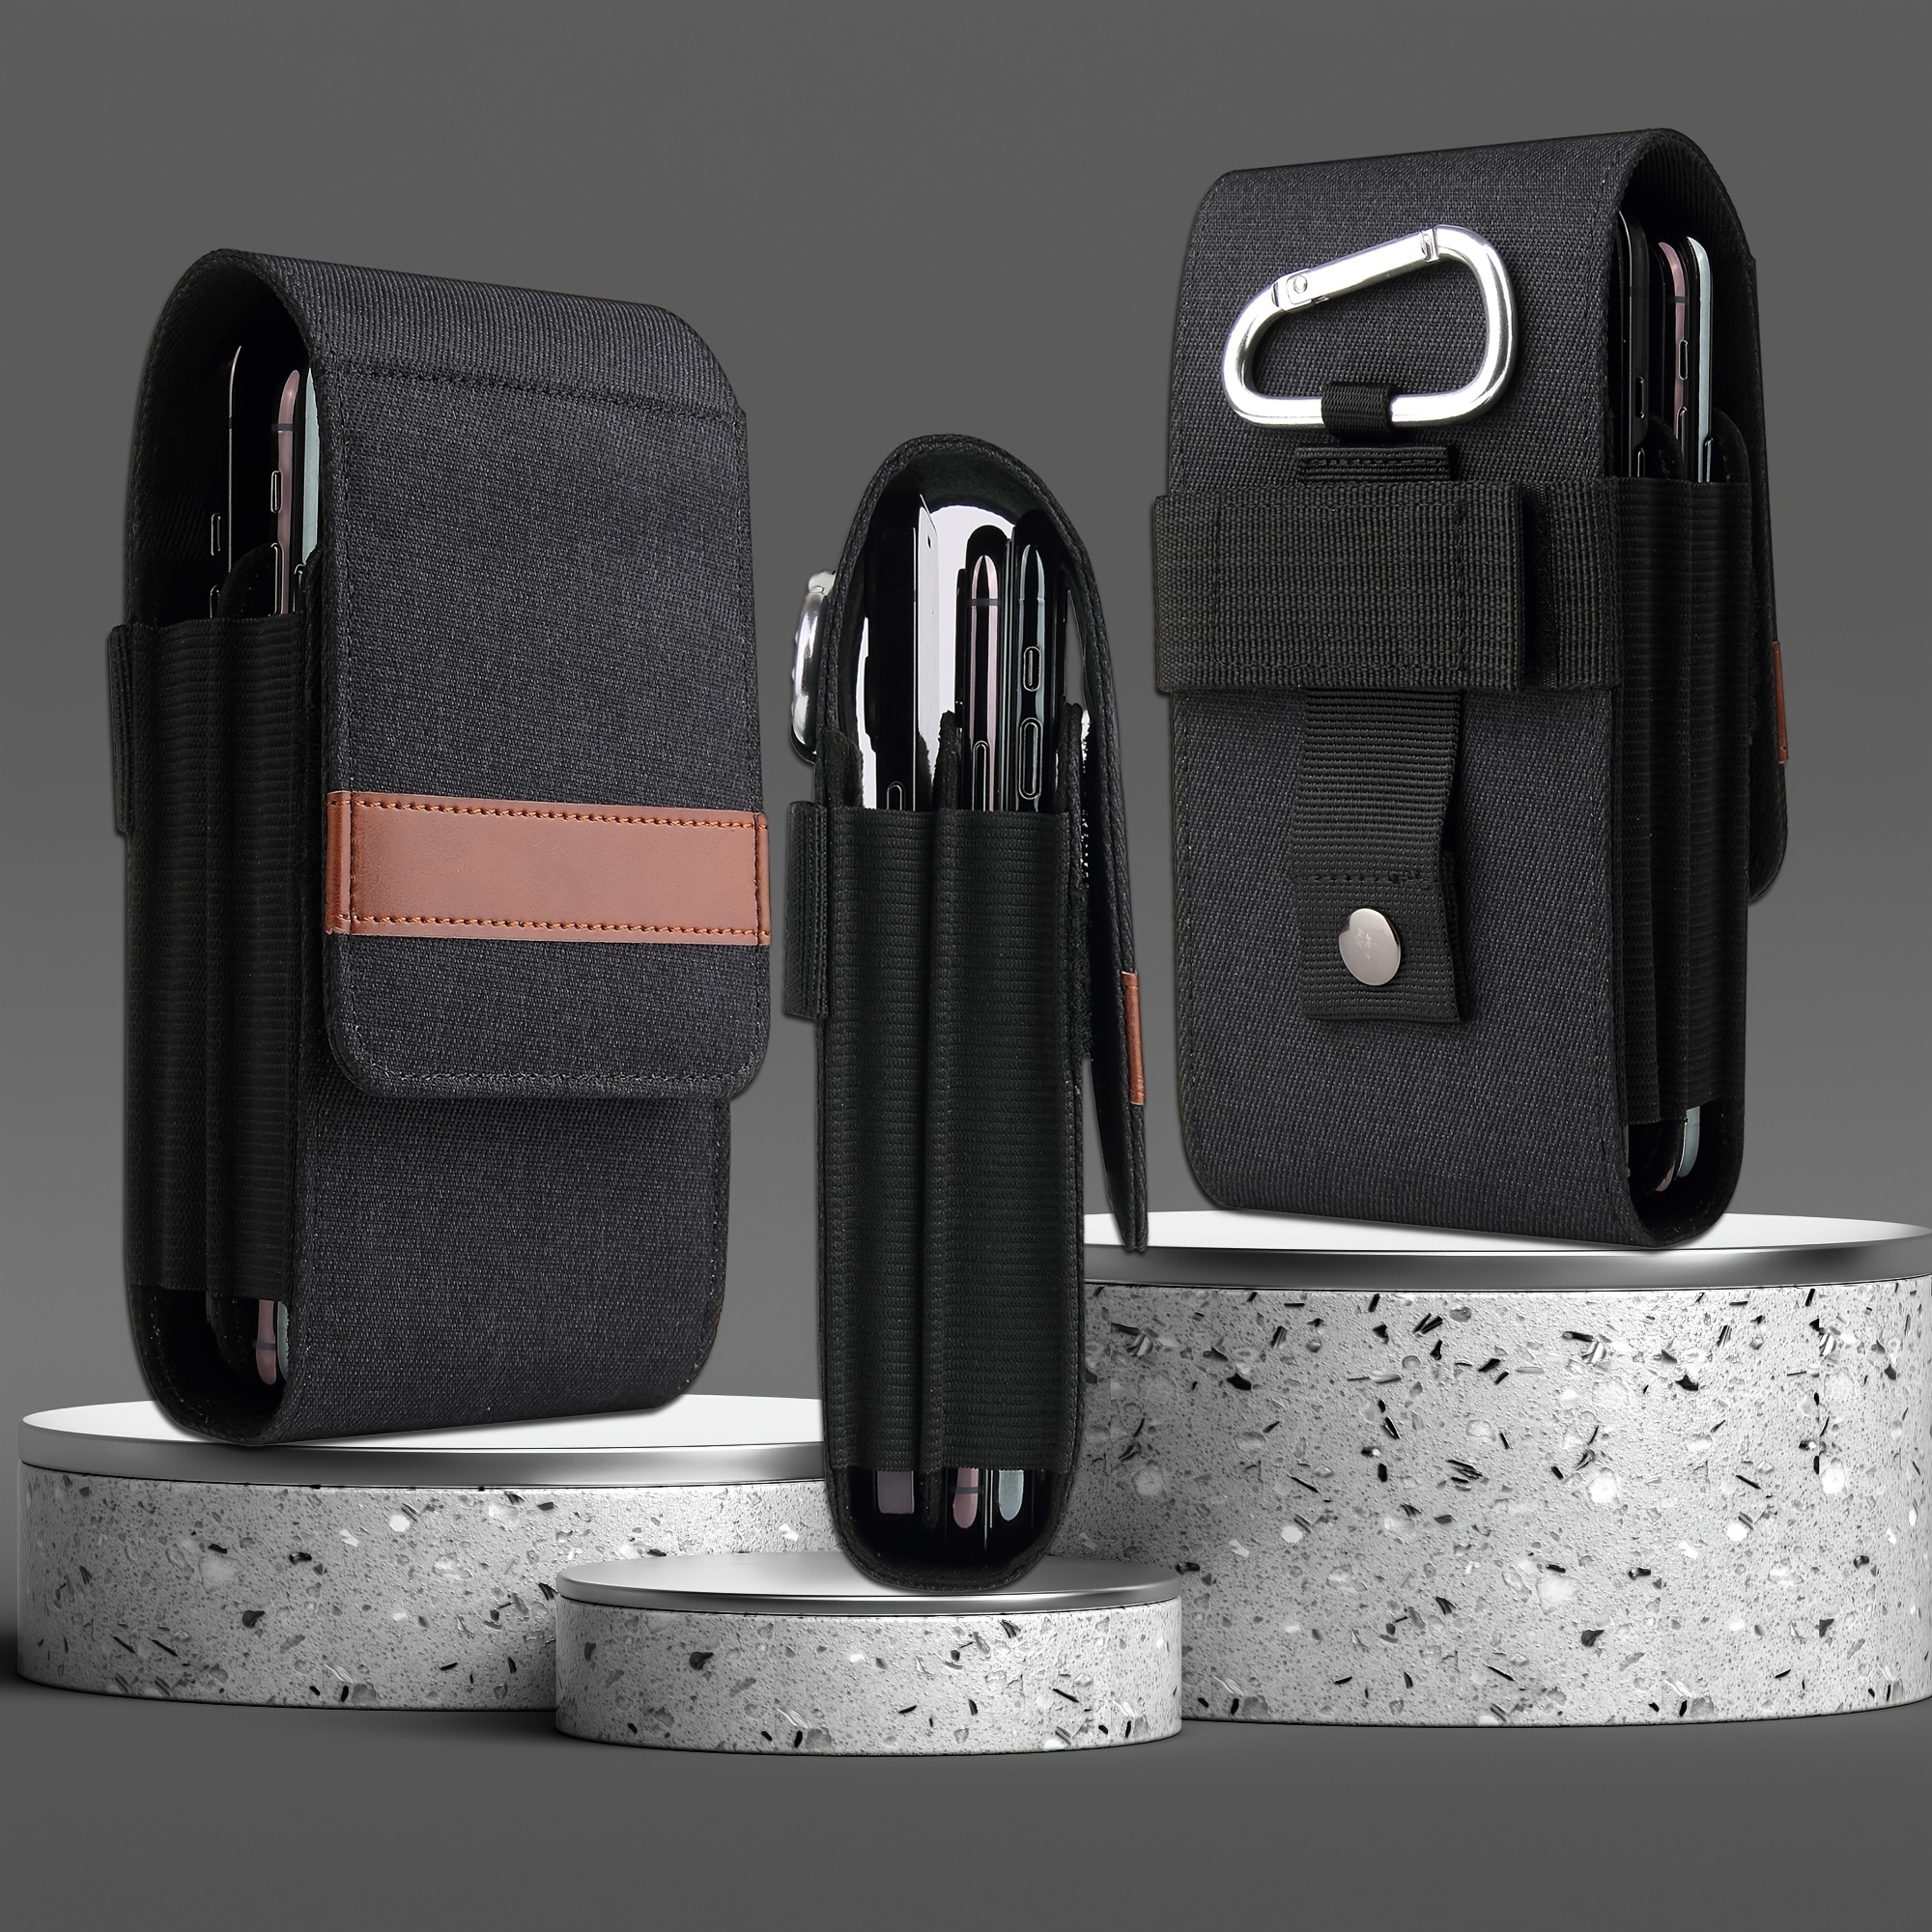 Encased Nylon Phone Pouch Belt Clip - Large